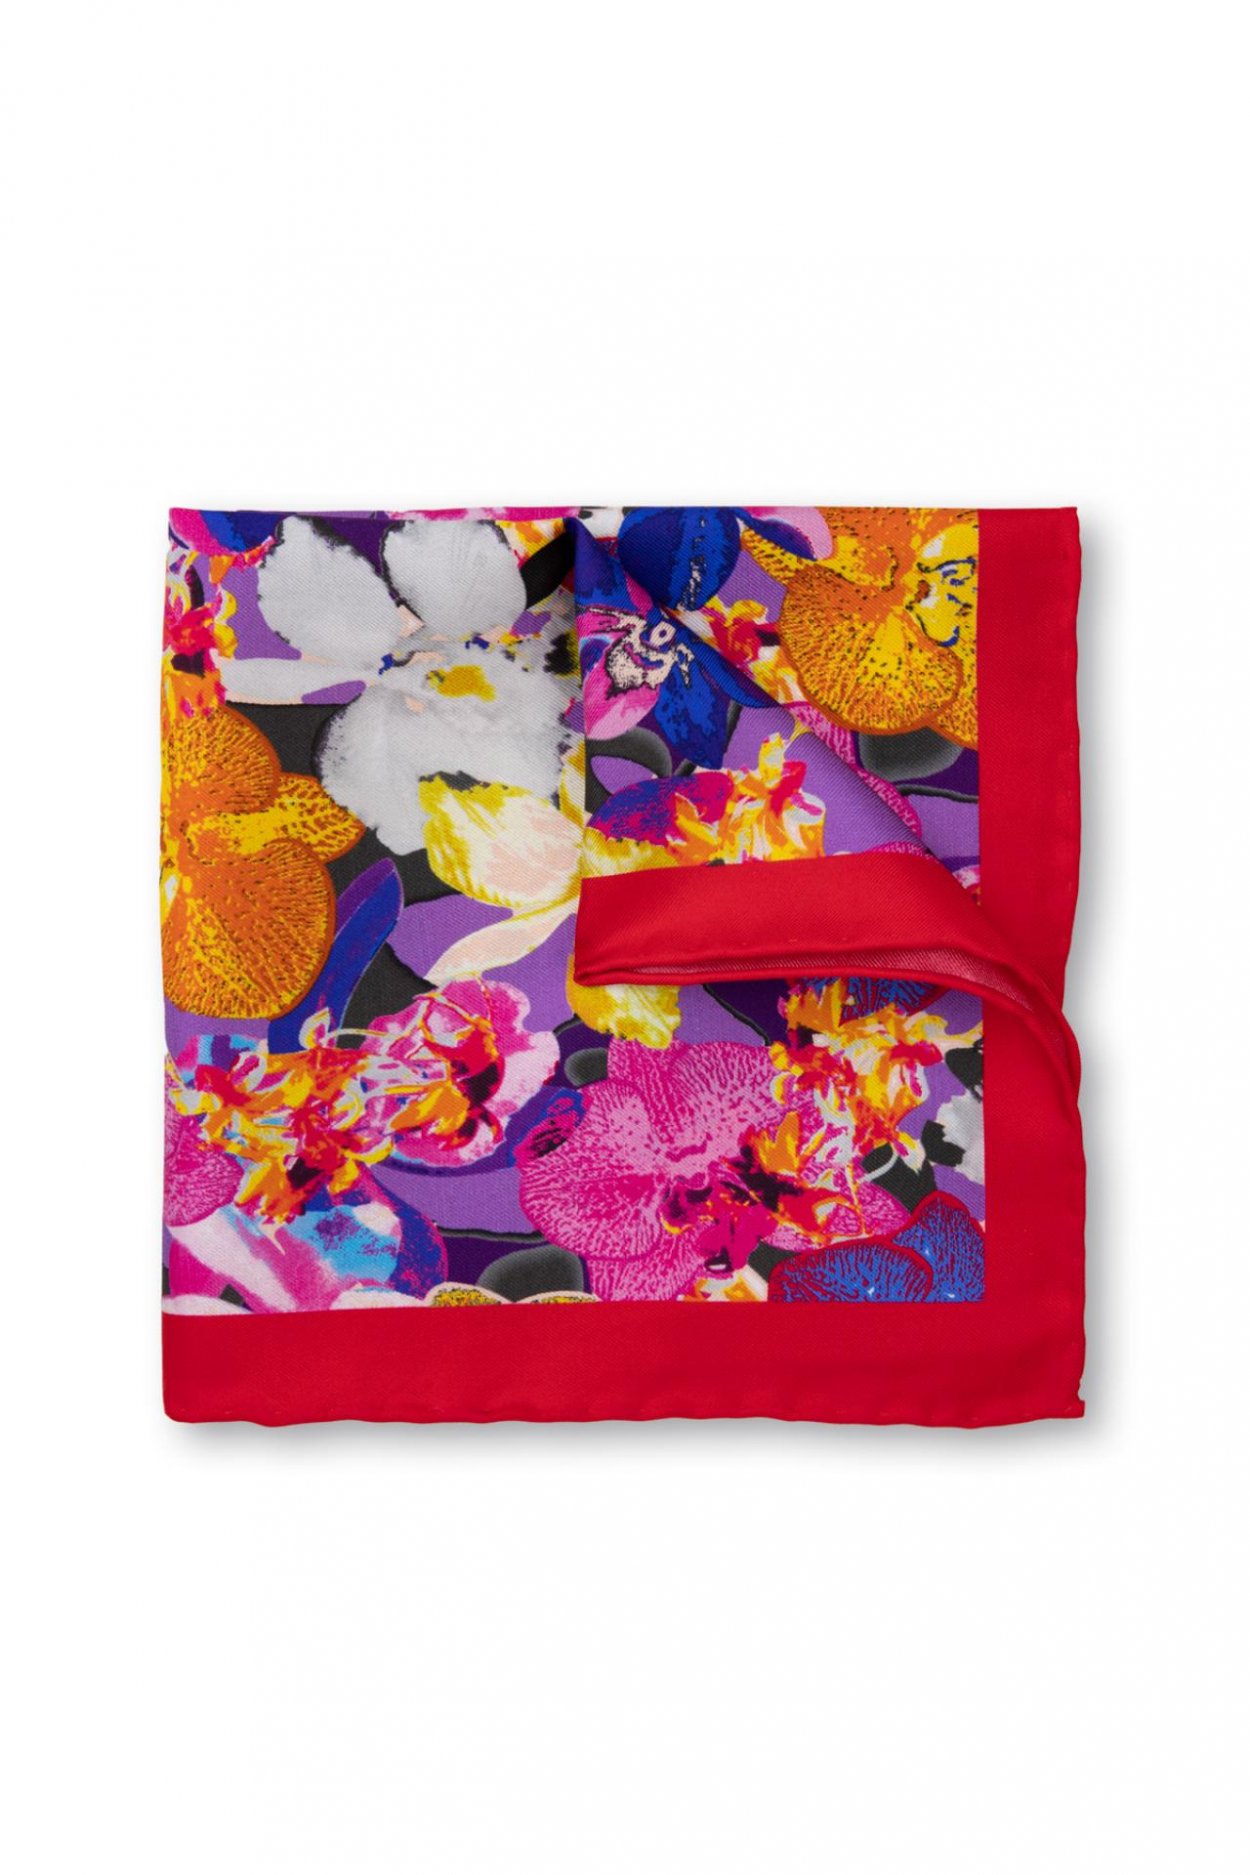 Barevný hedvábný kapesníček s květinovým vzorem